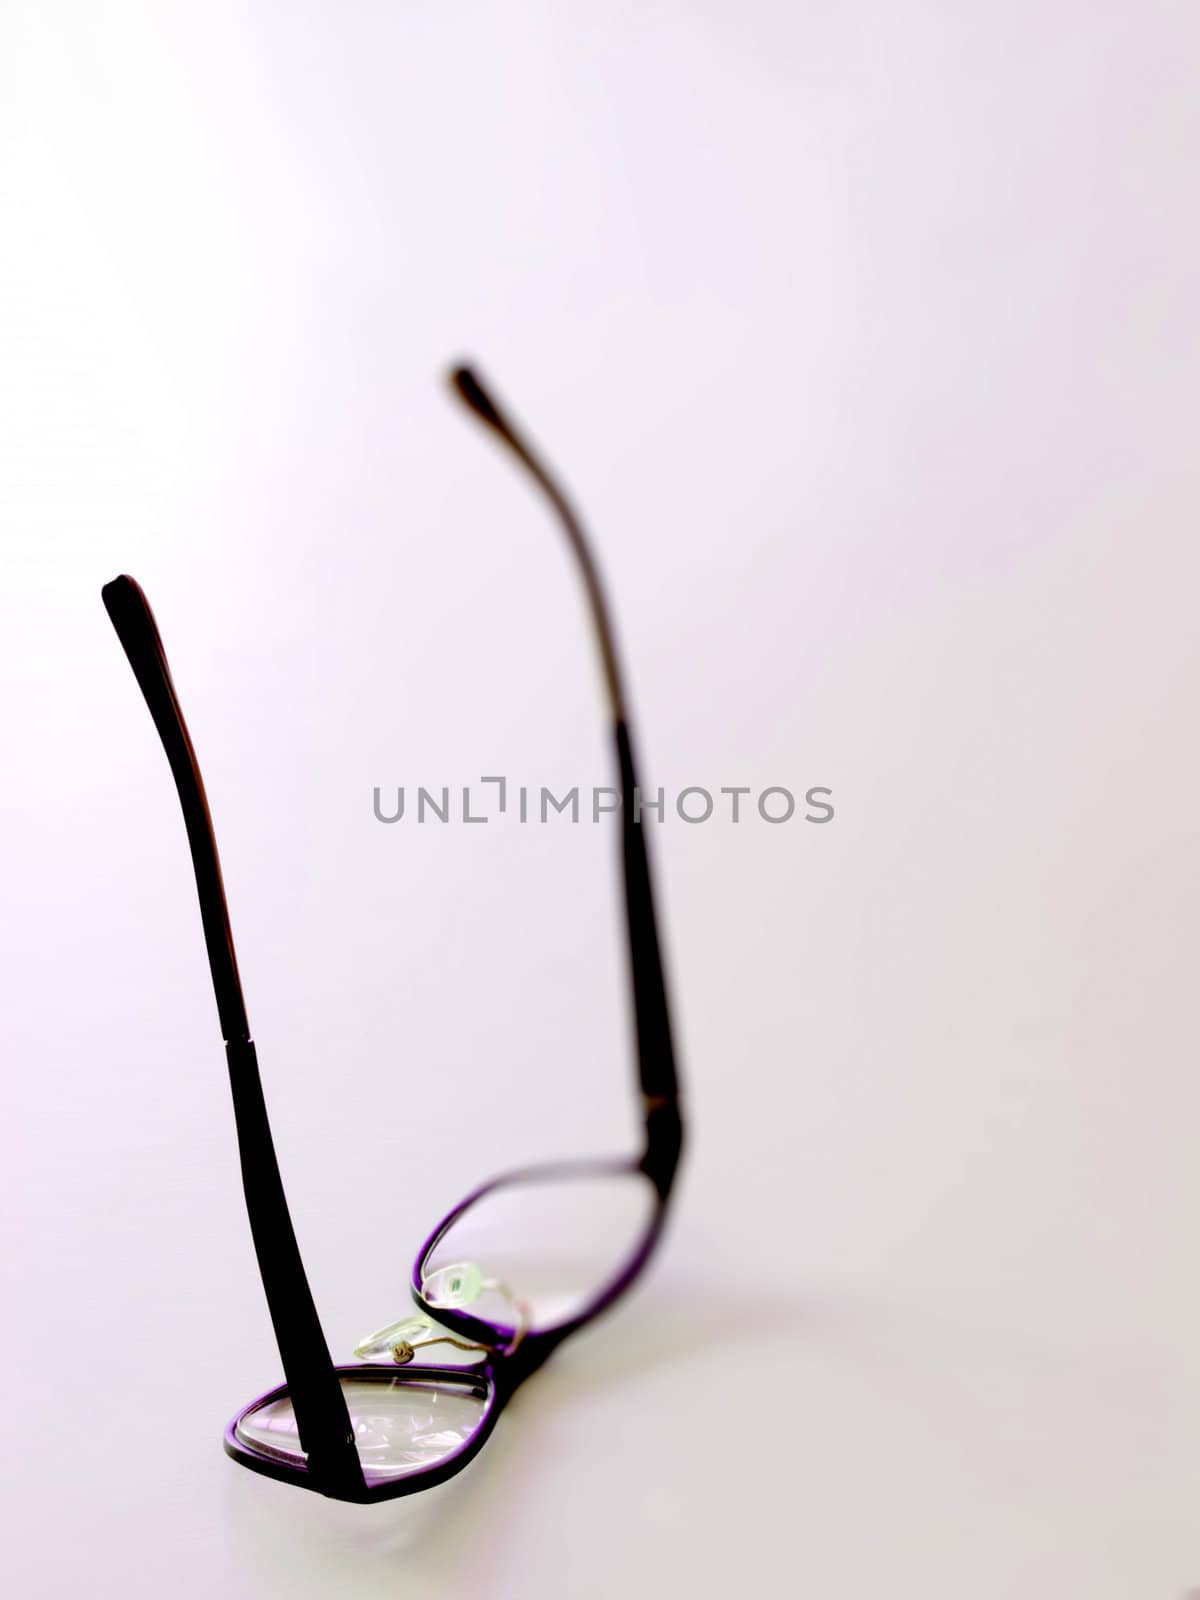 fallen eye glasses by zkruger